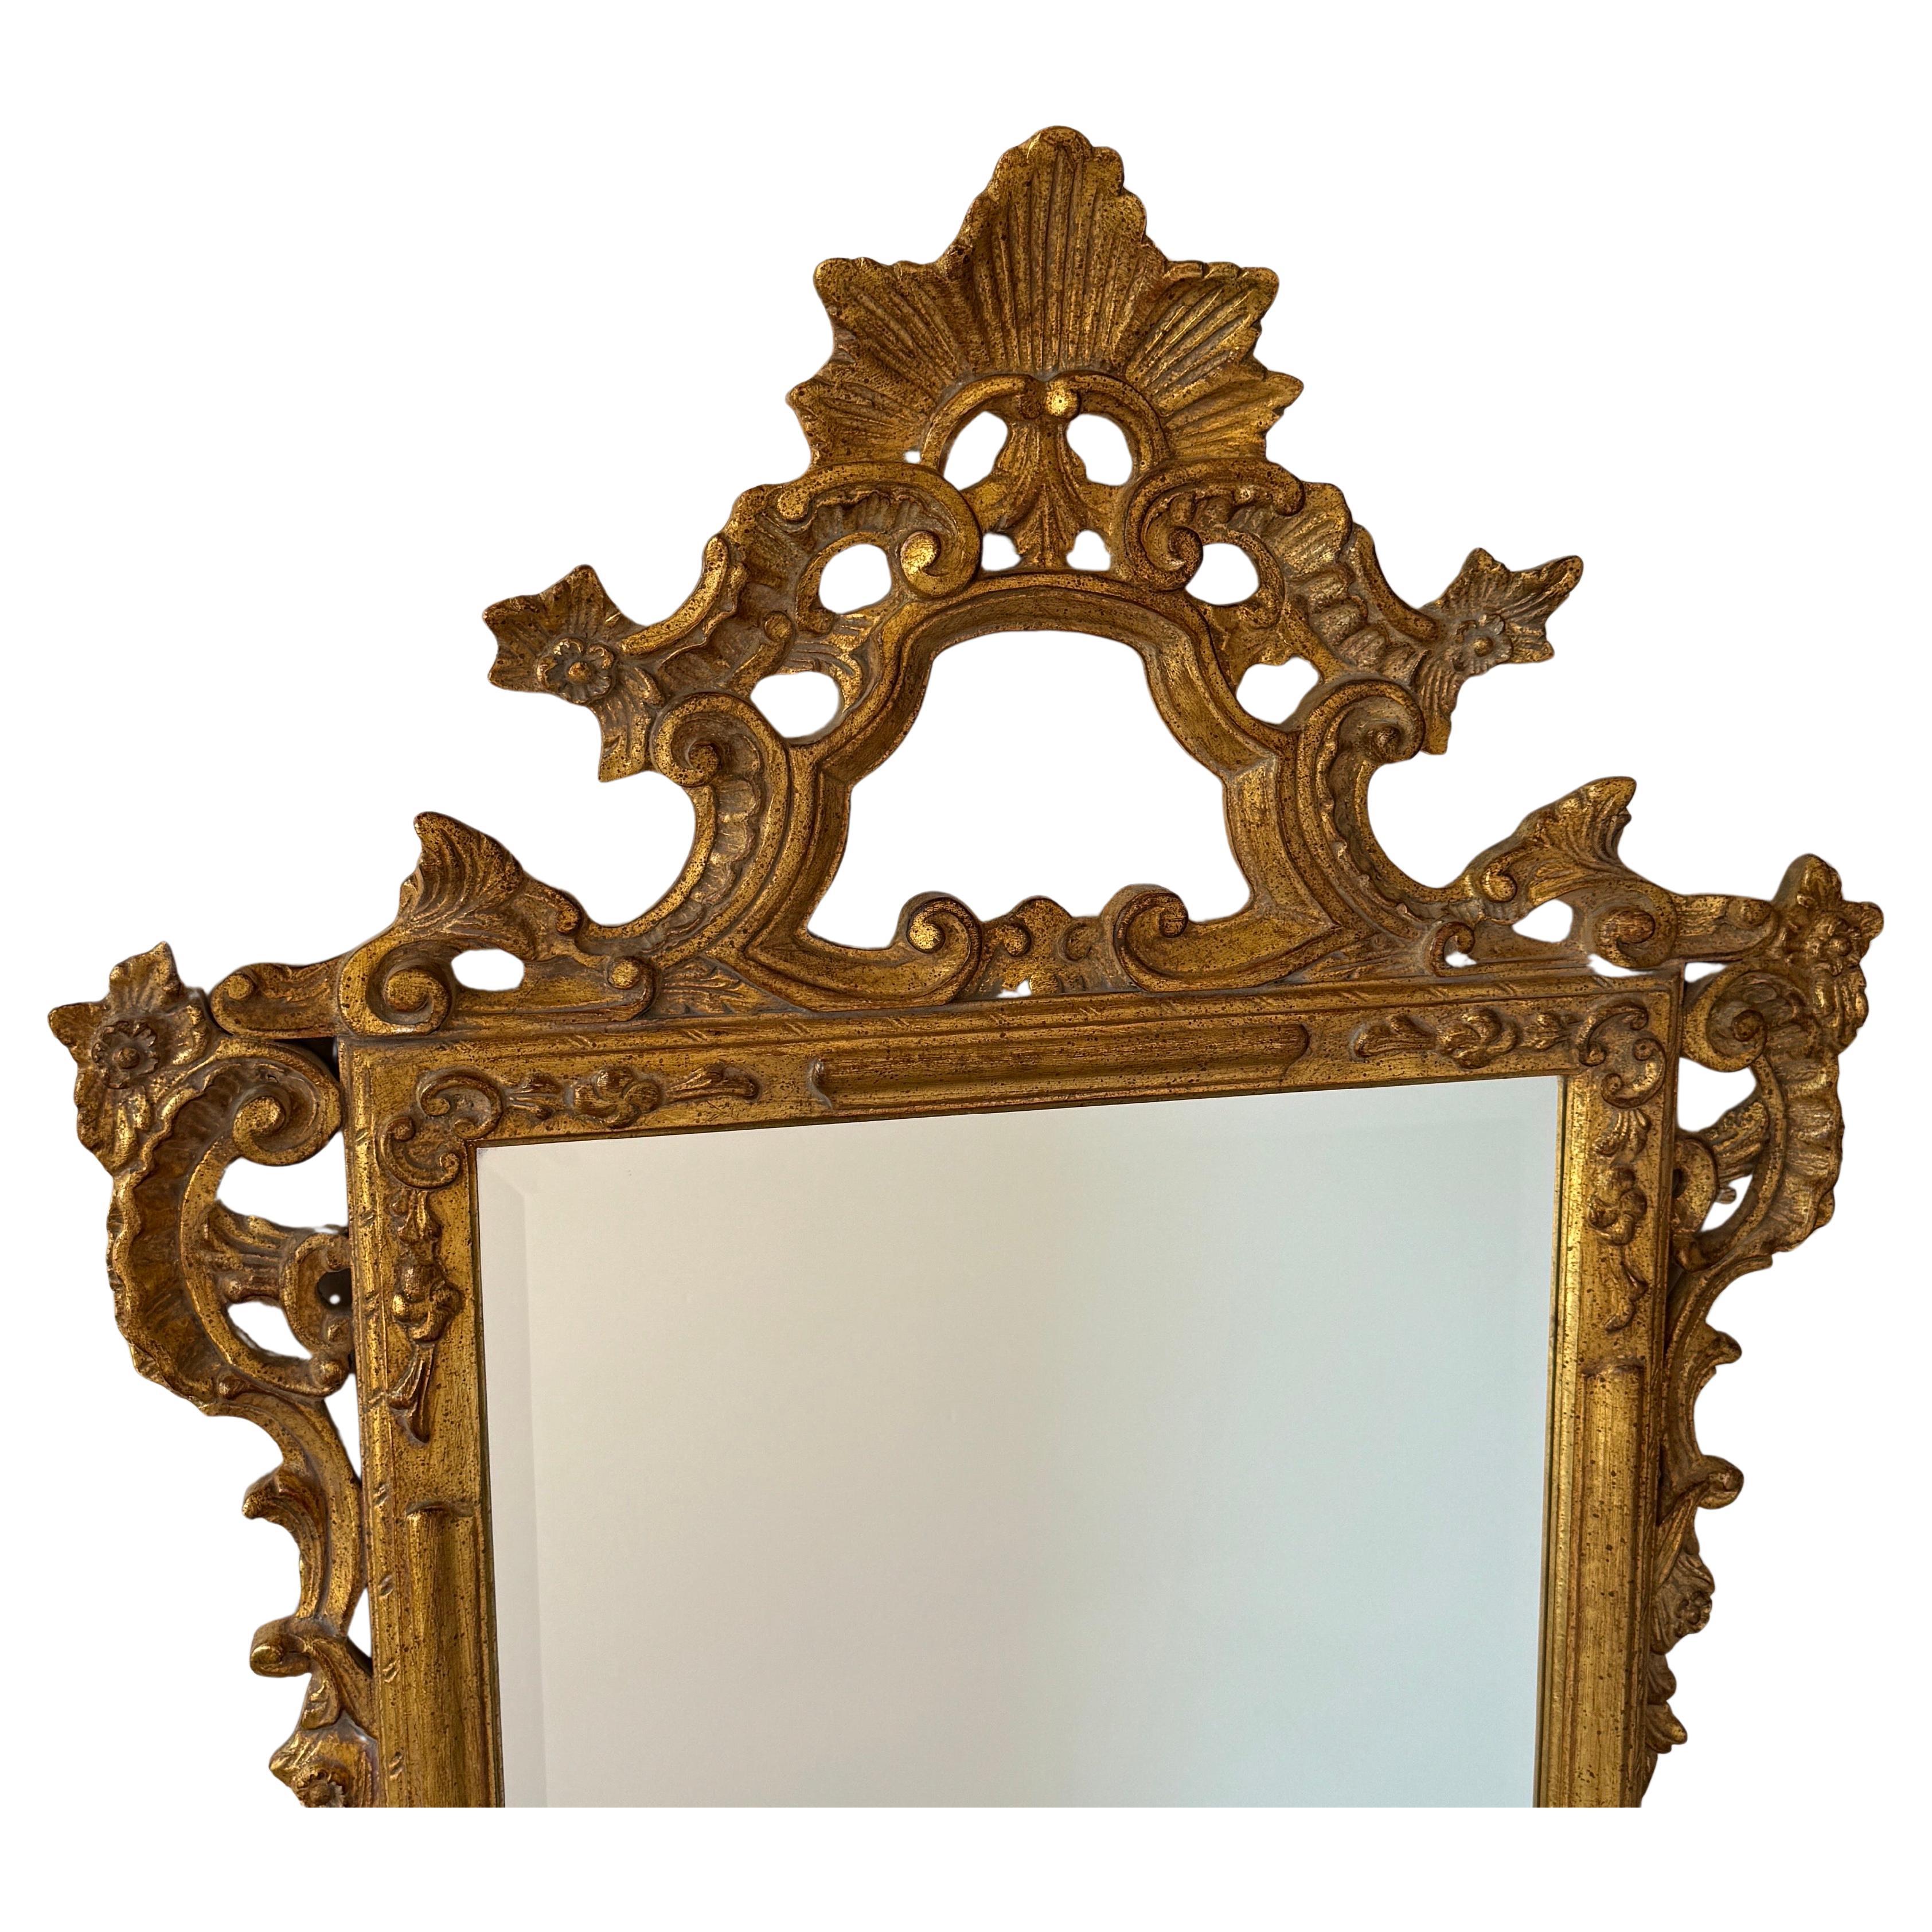 Grand miroir mural doré Louis XV, France

Décorez une salle d'eau ou une entrée avec cet élégant miroir doré. Fabriqué en France et incurvé, ce miroir mural est décoré d'un cartouche sculpté à la main au fronton présentant un motif central de